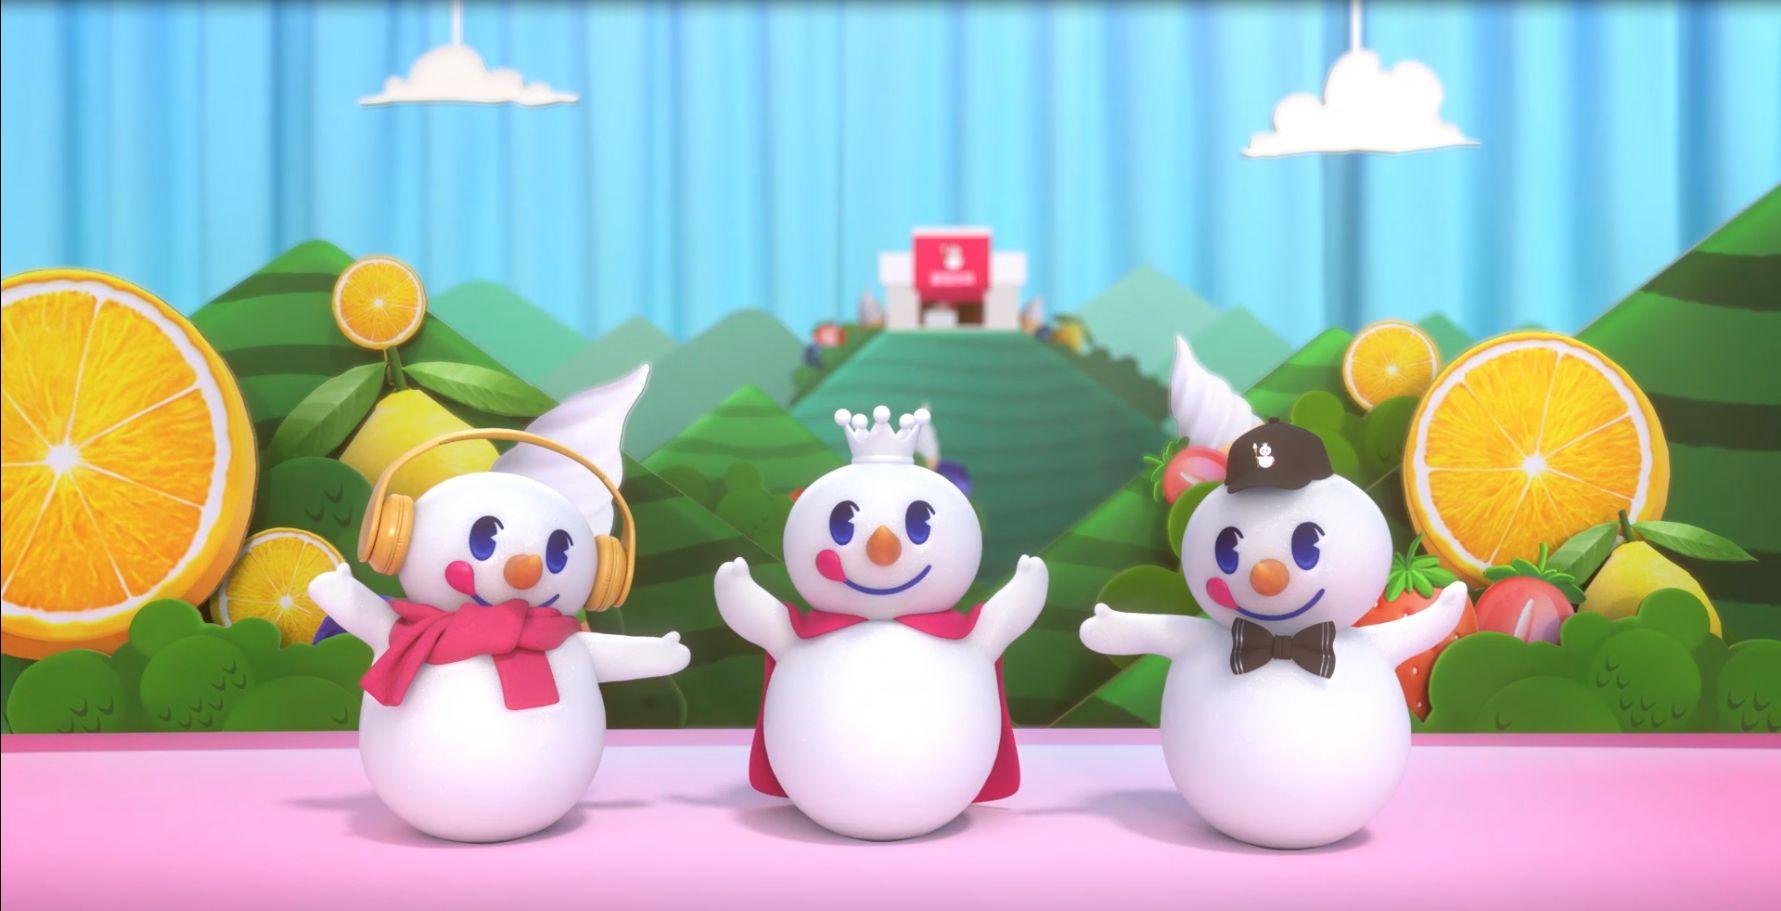 蜜雪冰城动画 mv 中出现的三个雪人是不是有不同的身份?